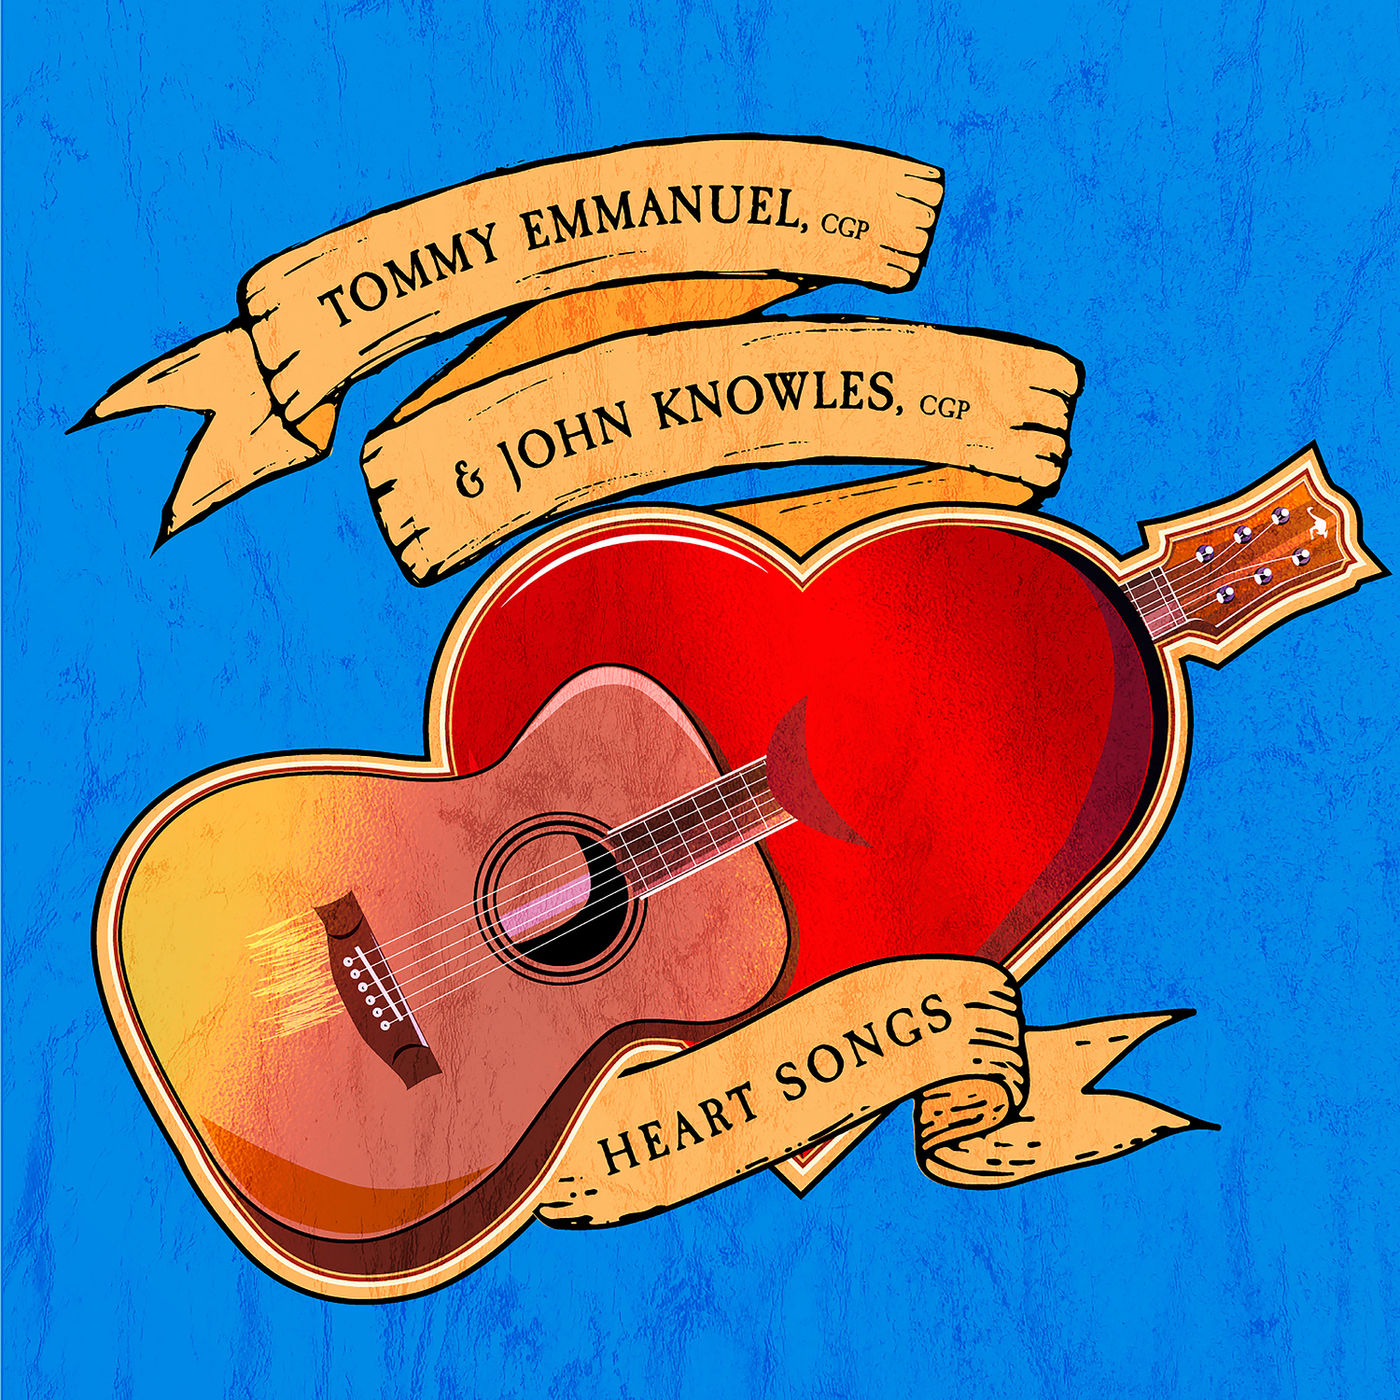 Tommy Emmanuel & John Knowles - Heart Songs (2019) [FLAC 24bit/44,1kHz]